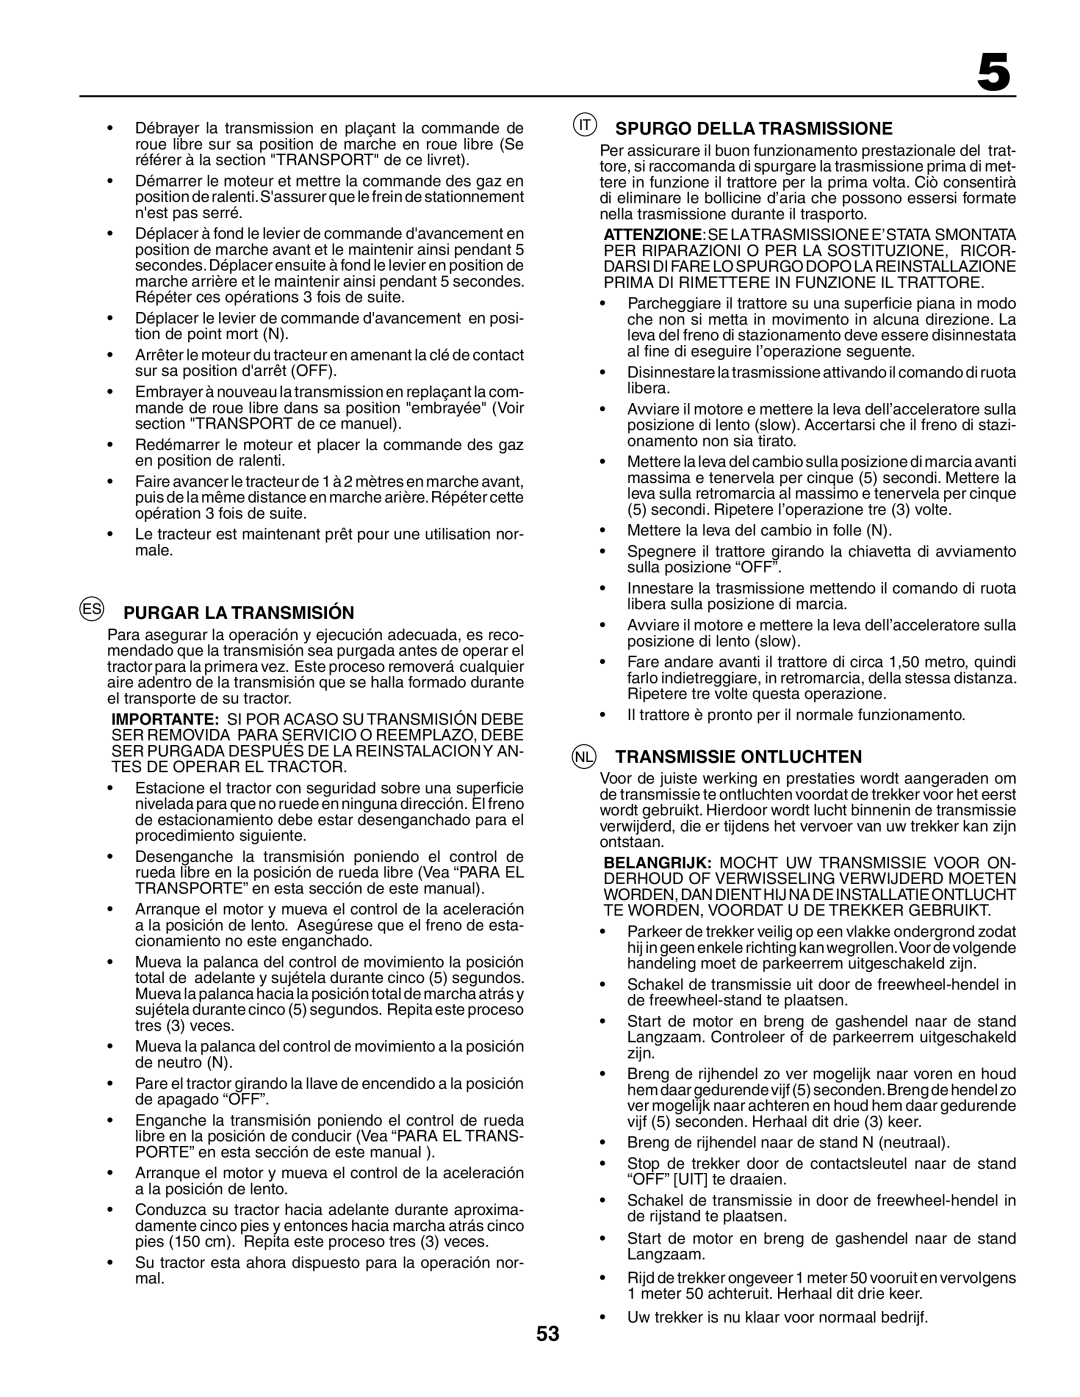 Jonsered LT2117CMA, LT2119CMA instruction manual Purgar La Transmisión, Spurgo Della Trasmissione, Transmissie Ontluchten 